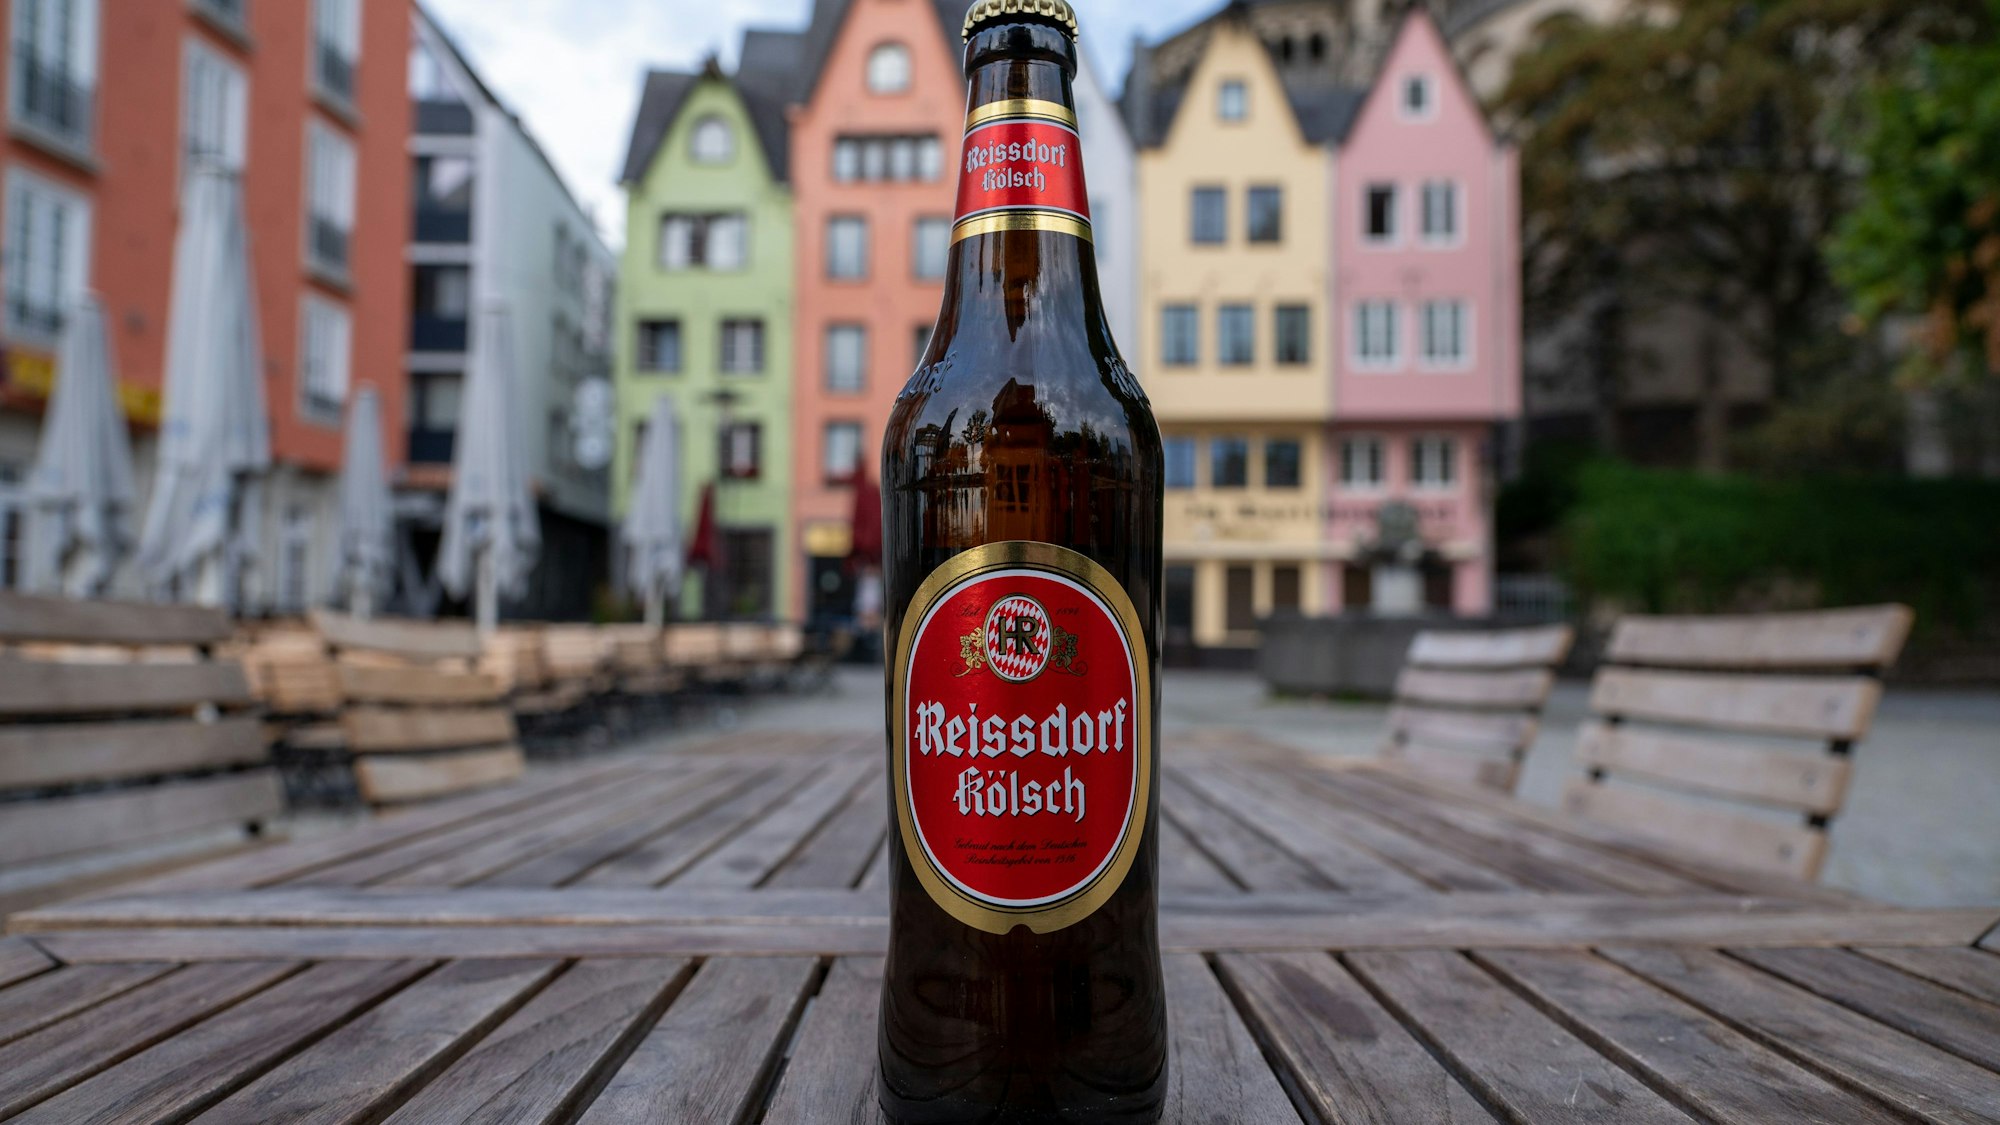 Reissdorf Kölsch-Flasche steht auf einem Tisch vor bunten Häusern in Köln.